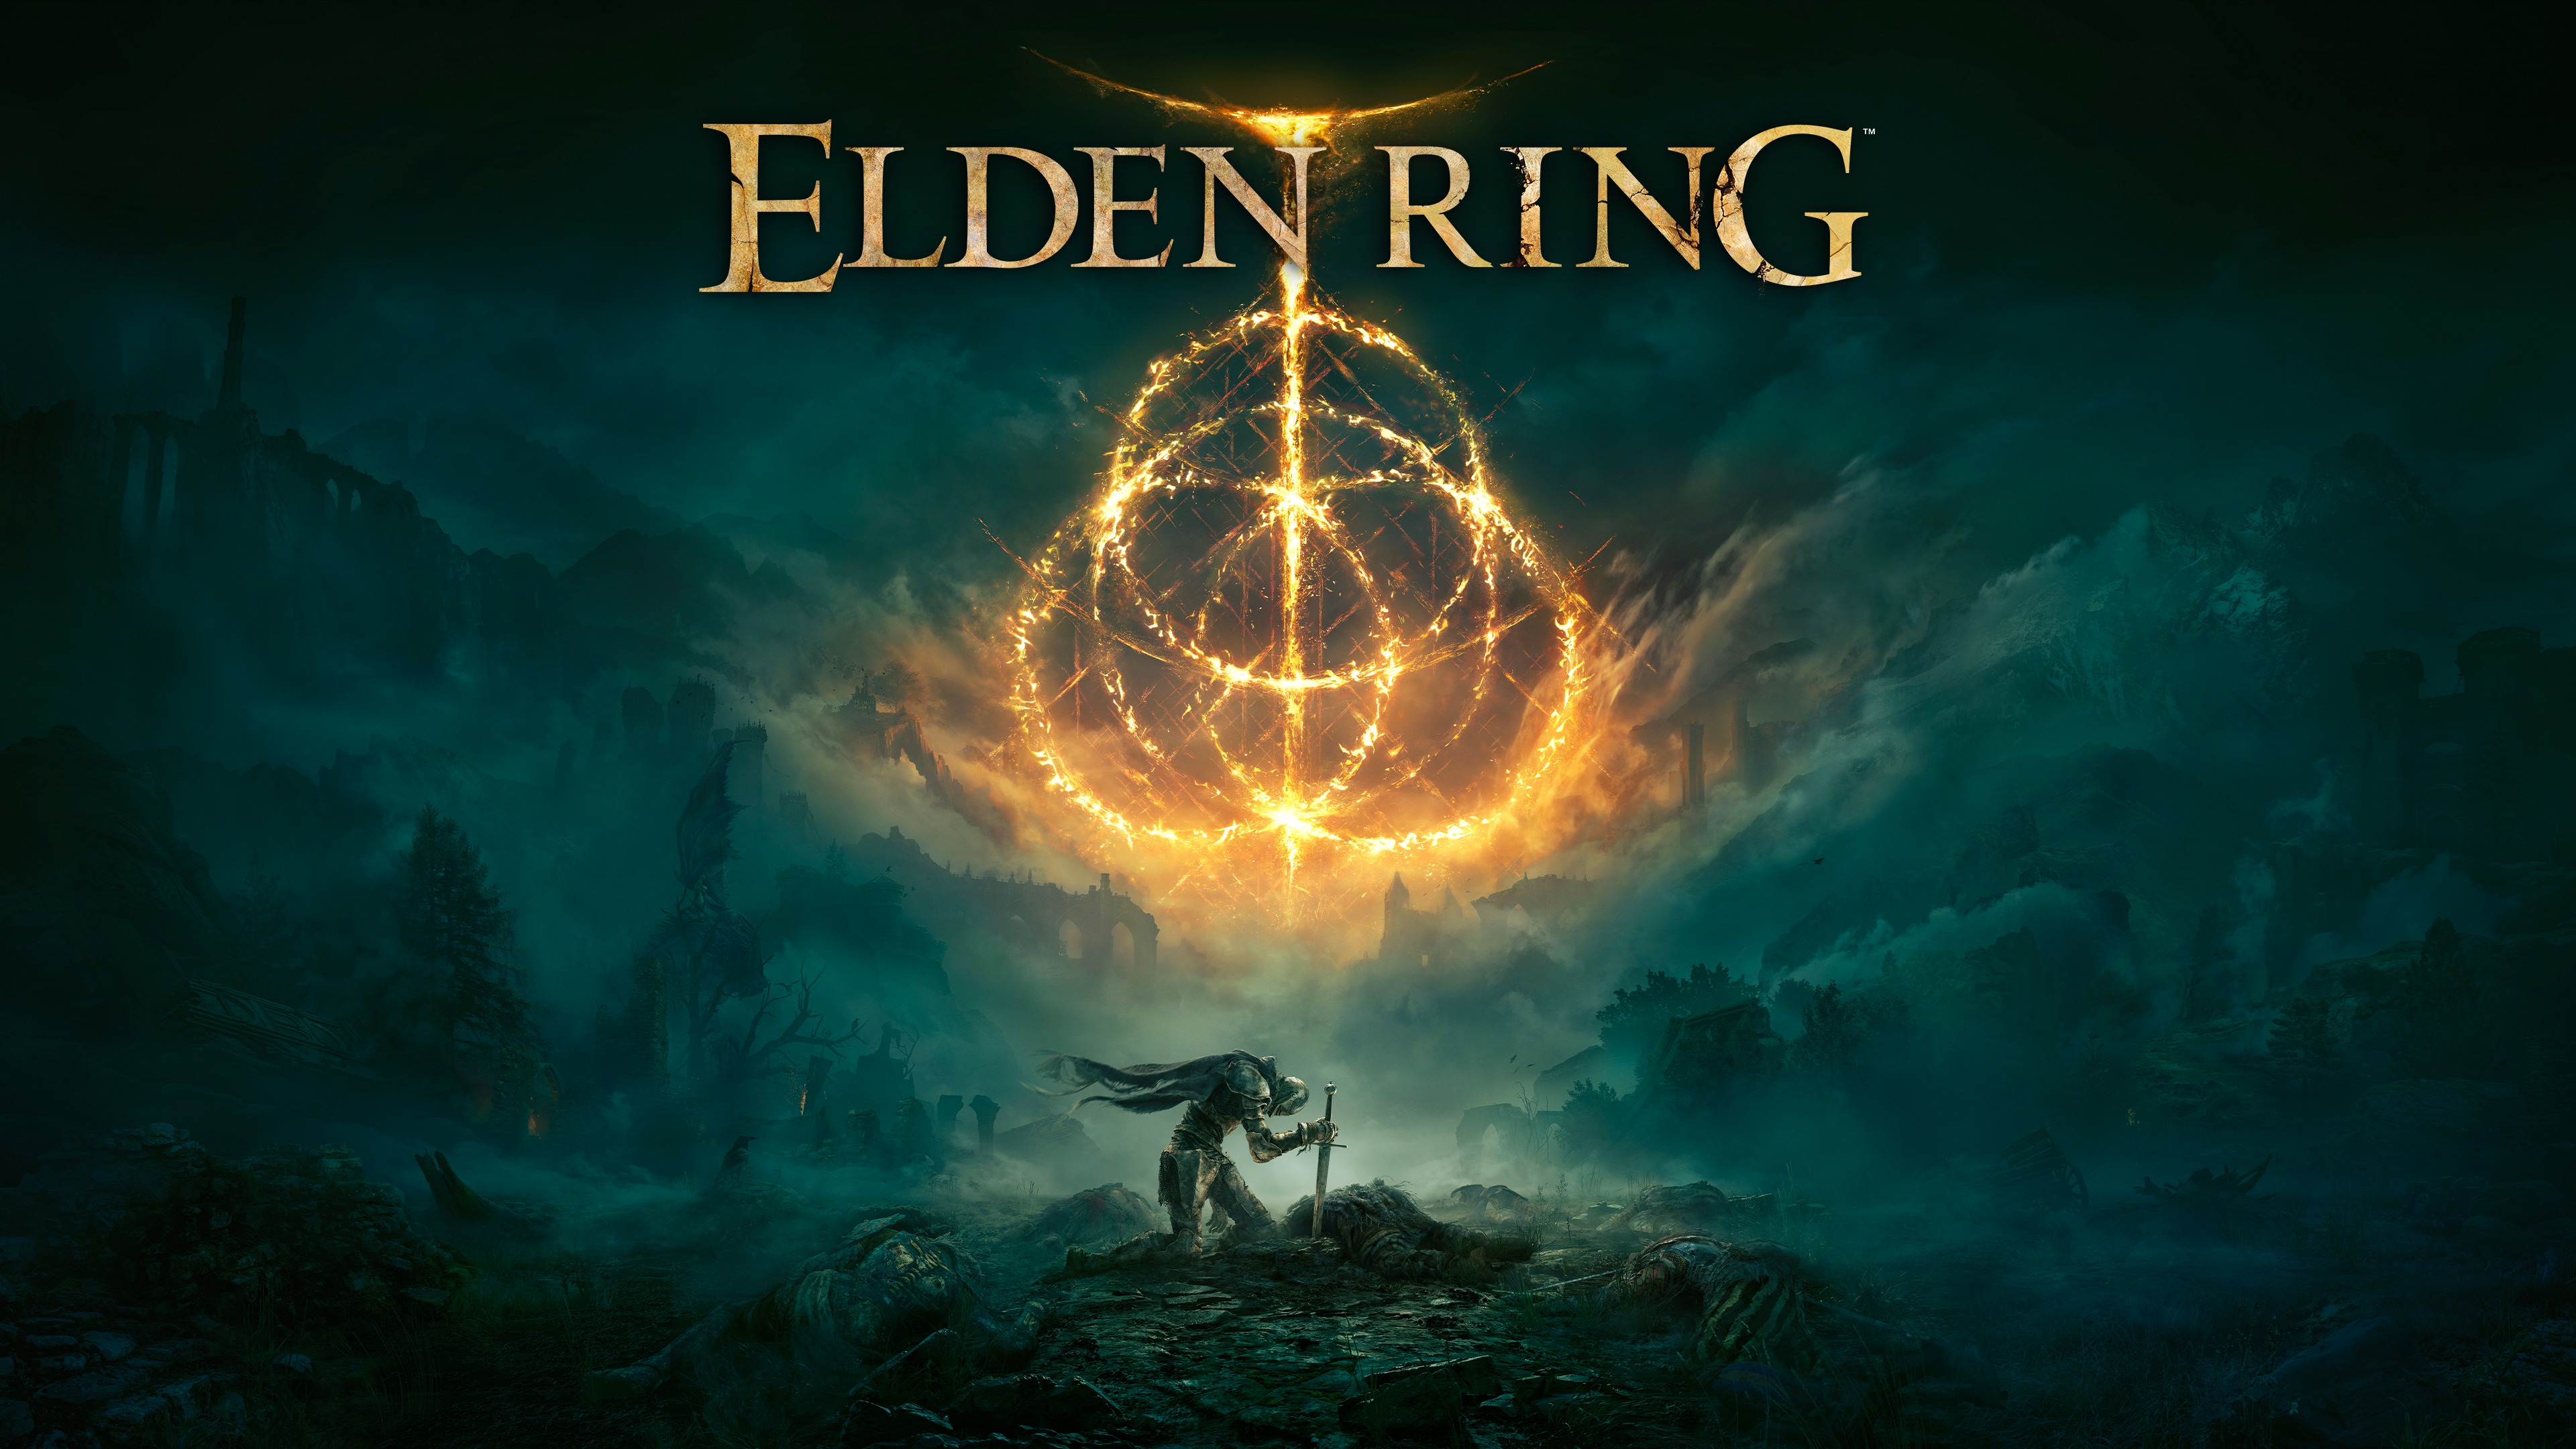 Popular Elden Ring background images